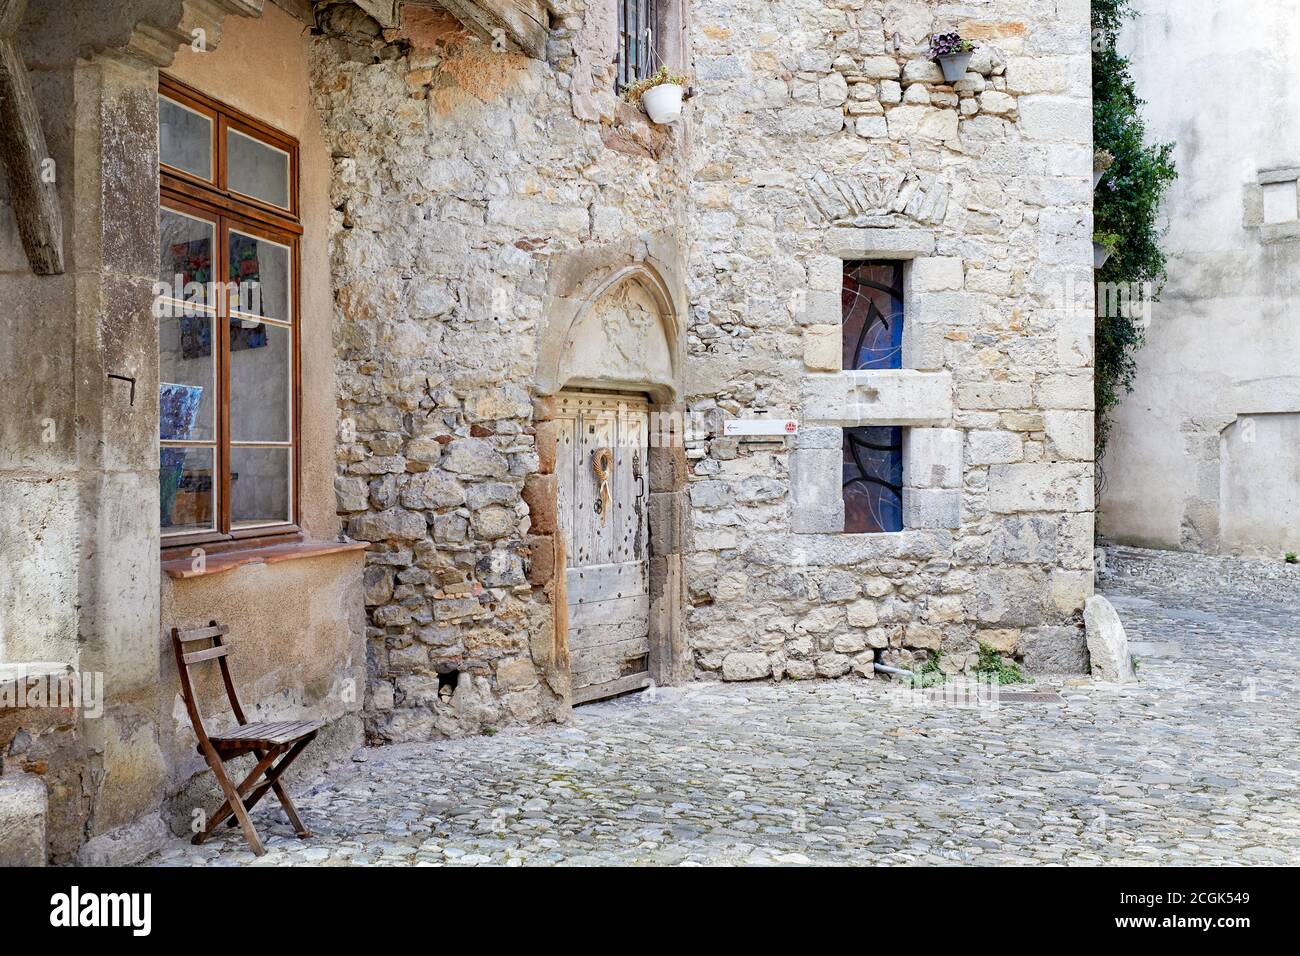 Une maison médiévale dans le village de Lagrasse, au sud de la France Banque D'Images